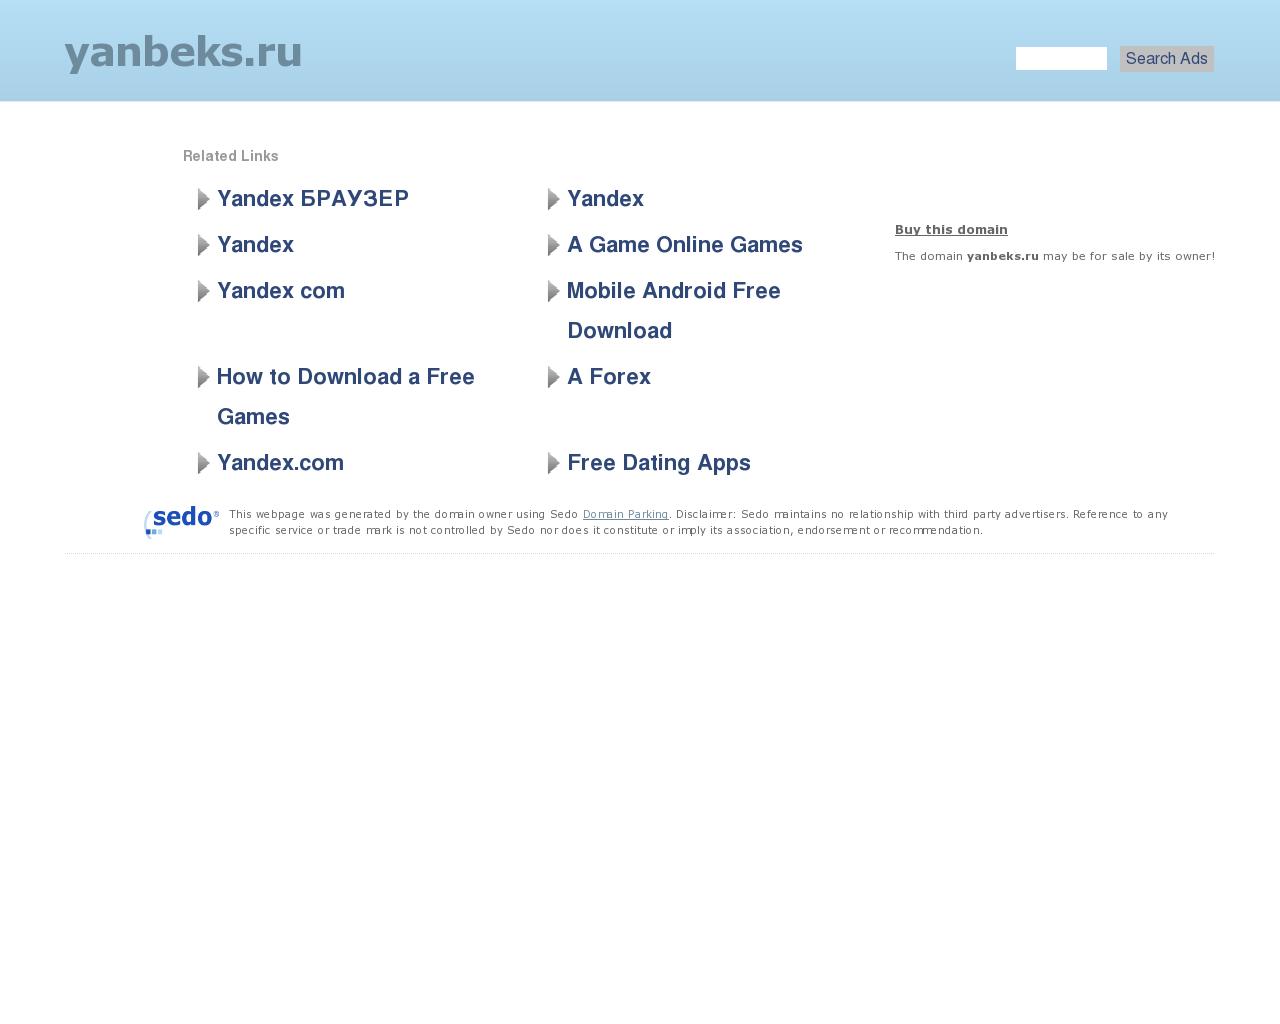 Изображение сайта yanbeks.ru в разрешении 1280x1024